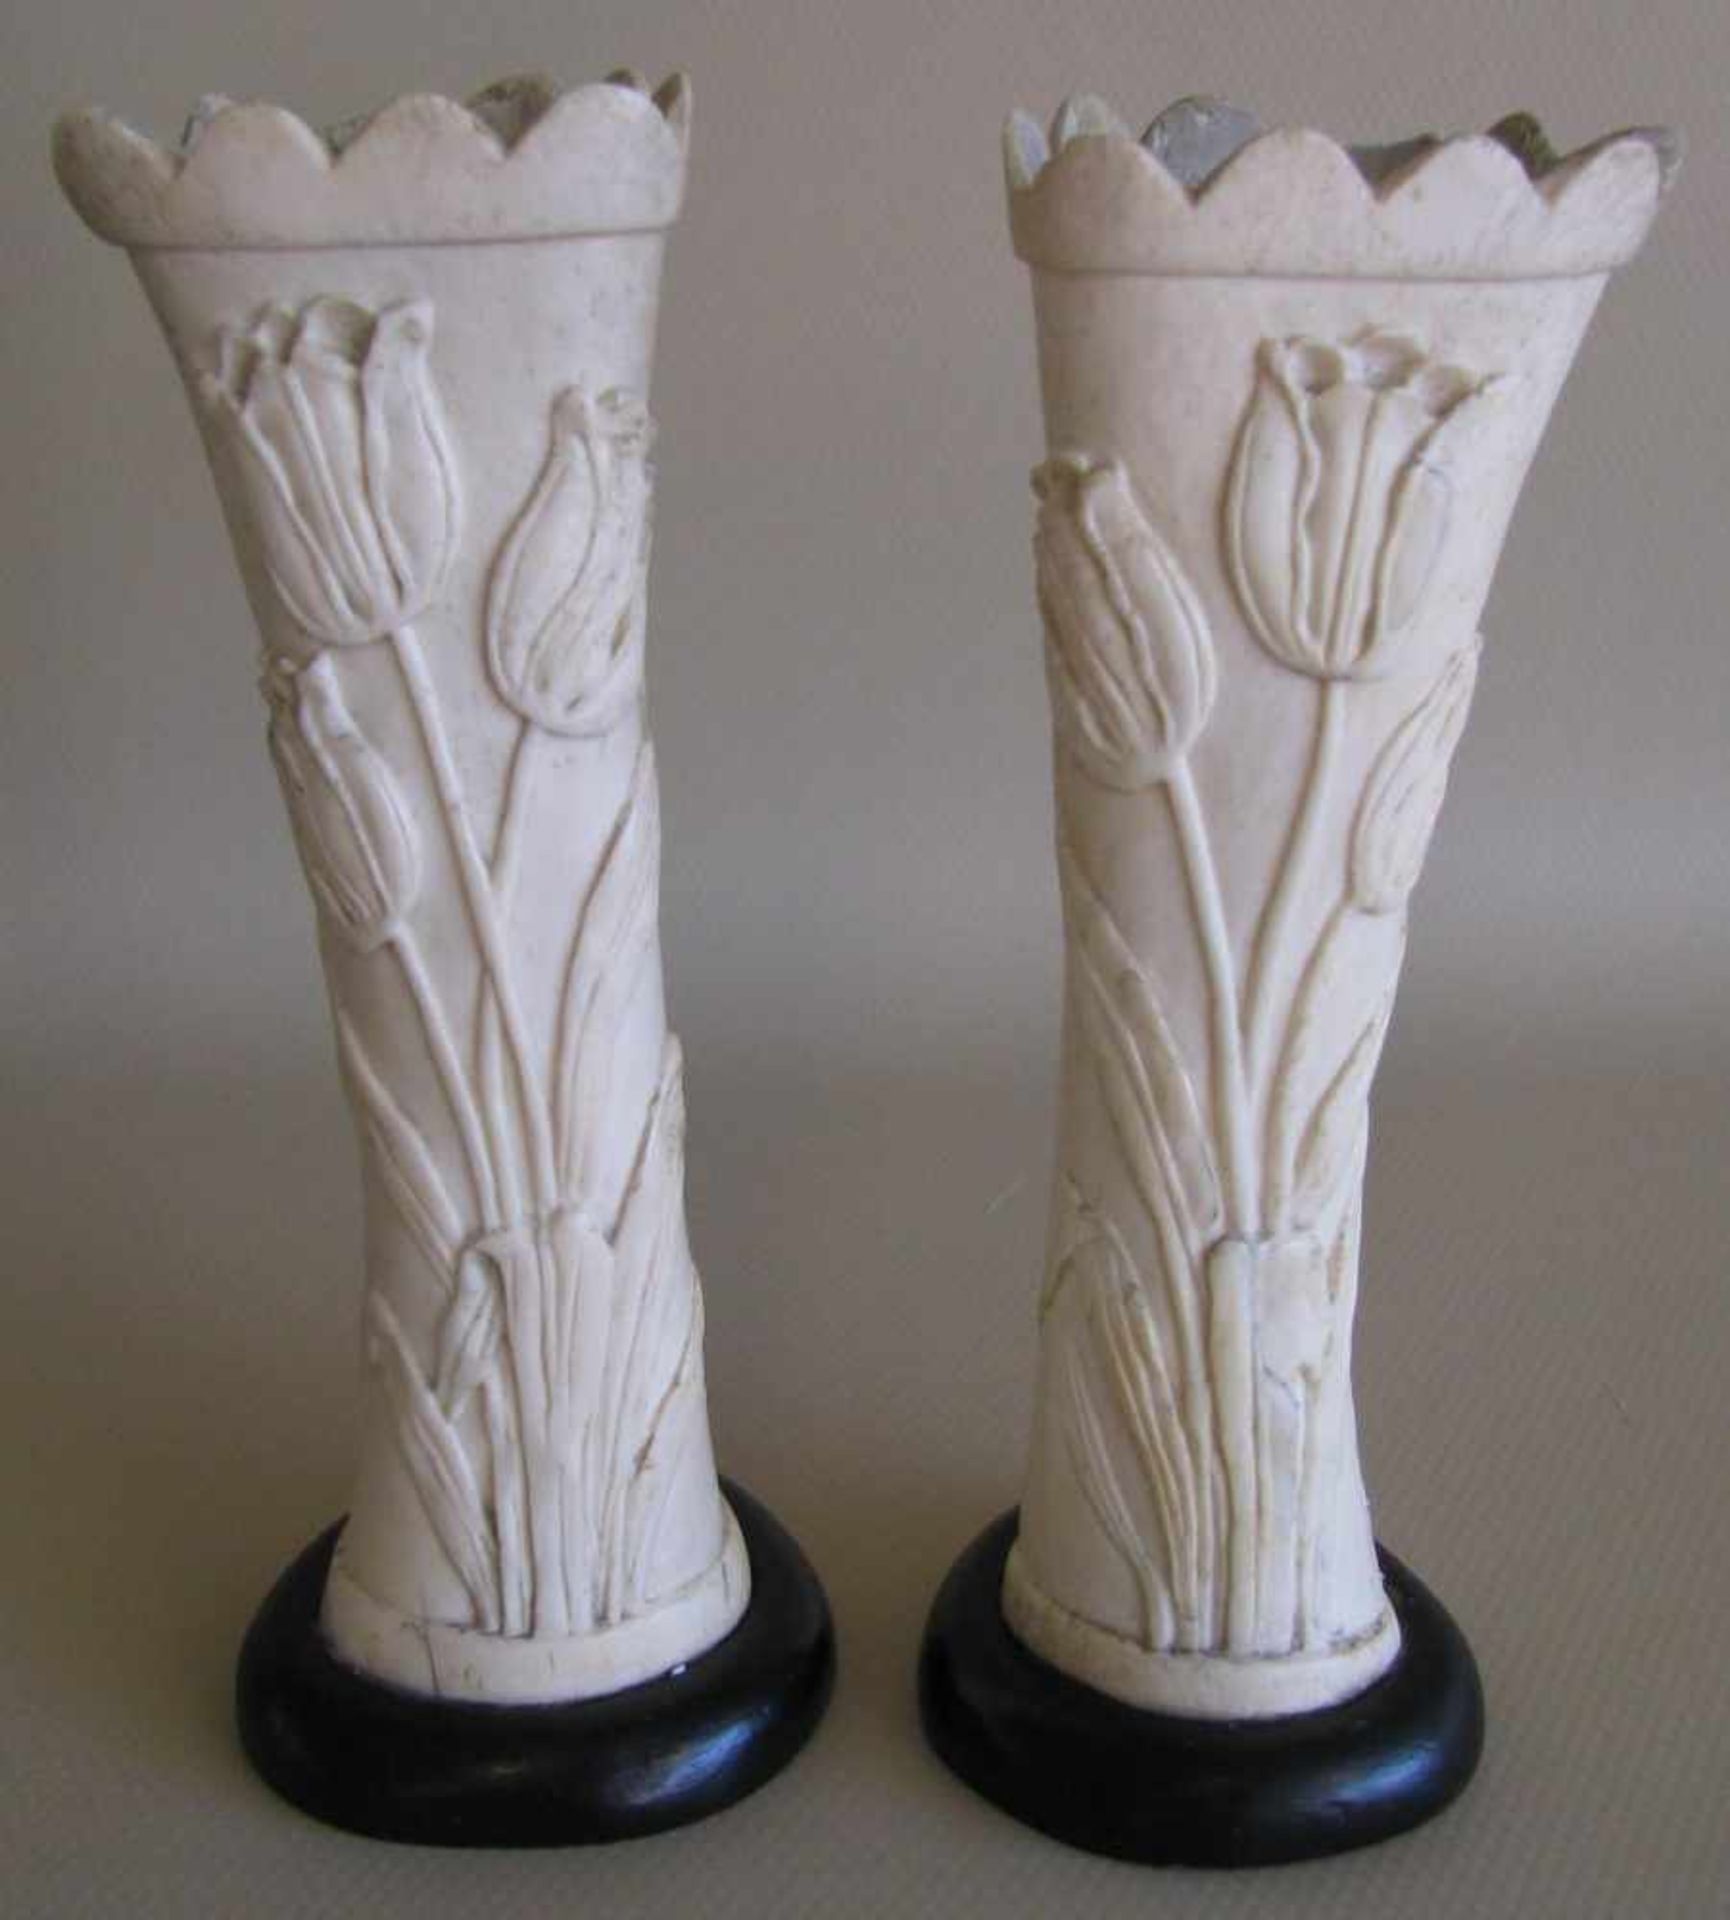 2 Väschen, Jugendstil, um 1900, Bein beschnitzt mit Tulpen, 2 Chips, Holzfuß, h 18 cm, 7 cm.